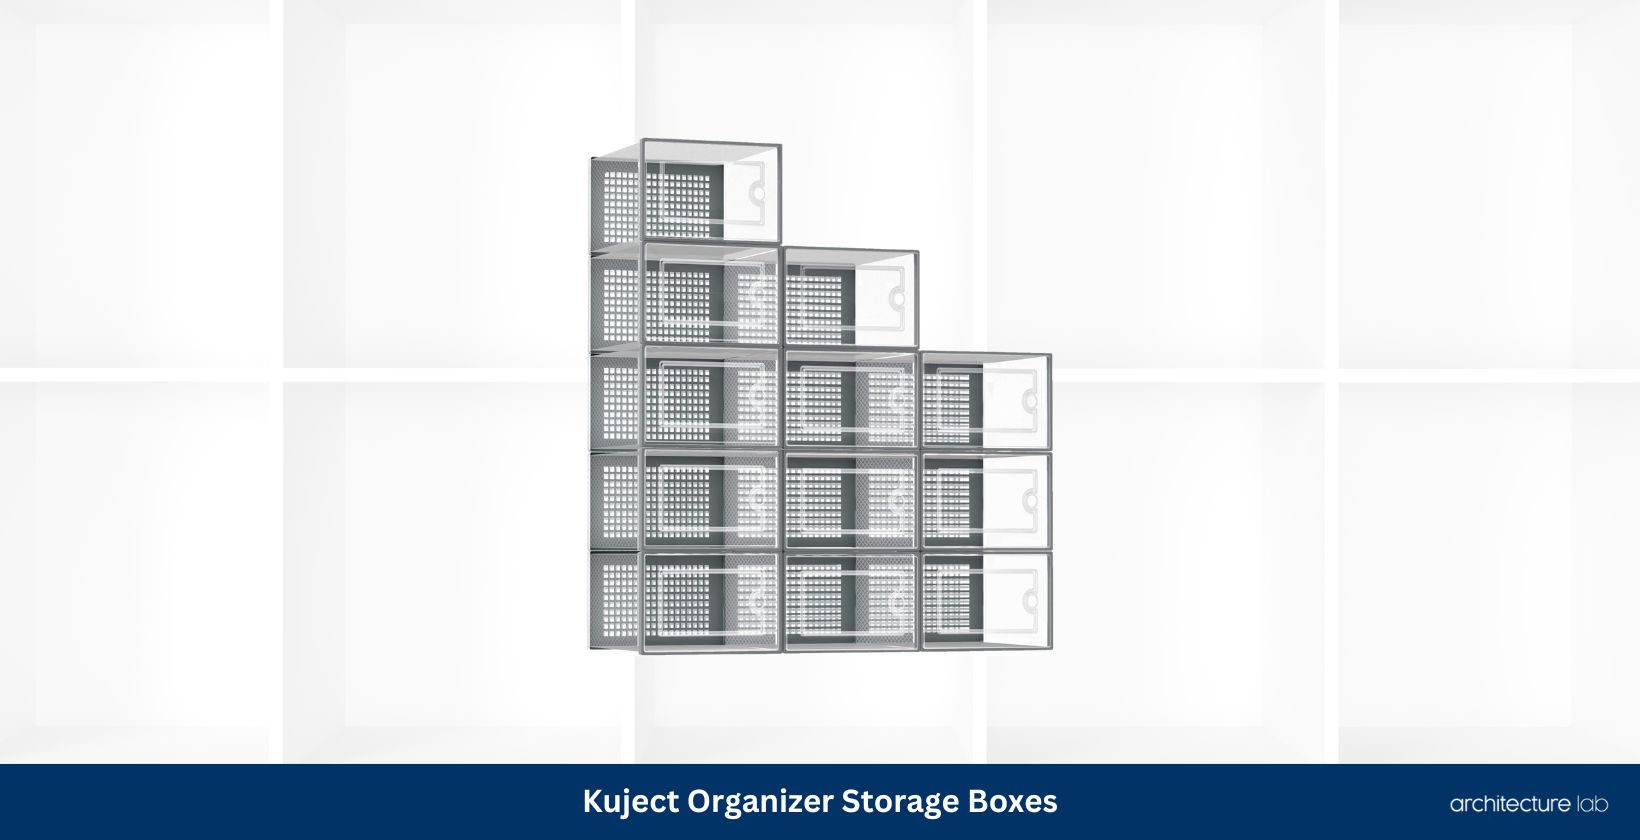 Kuject organizer storage